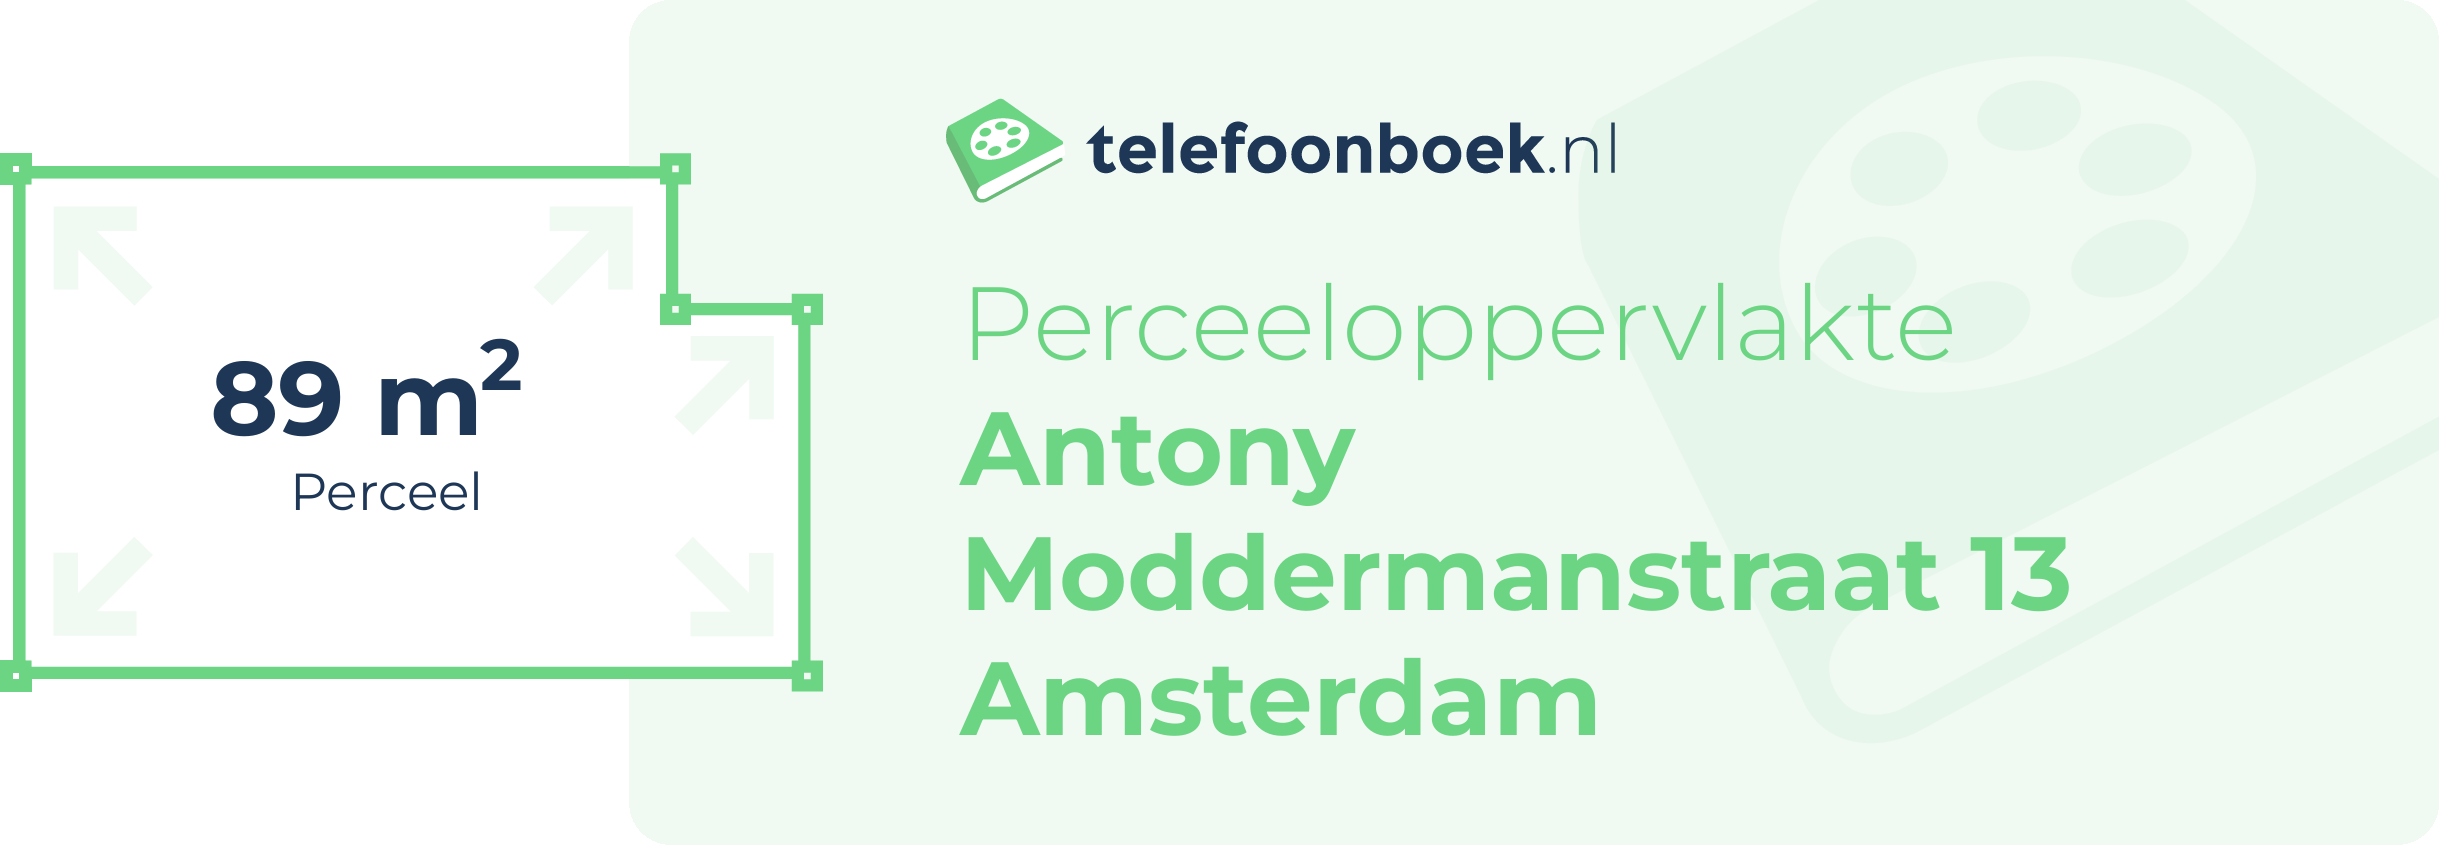 Perceeloppervlakte Antony Moddermanstraat 13 Amsterdam